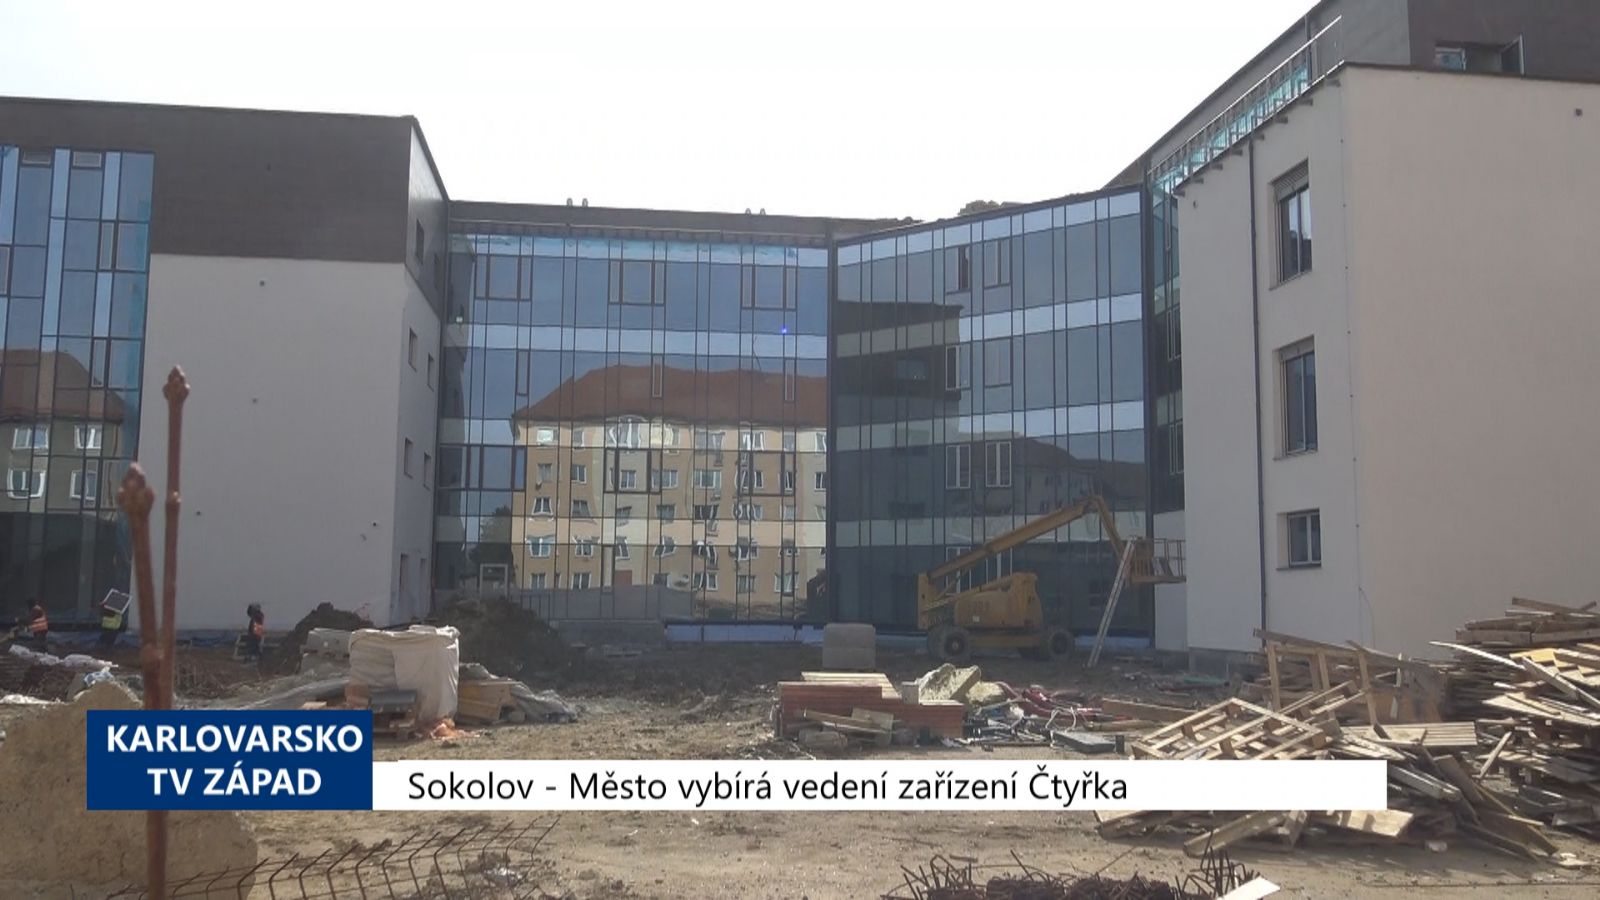 Sokolov: Město vybírá vedení zařízení Čtyřka (TV Západ)